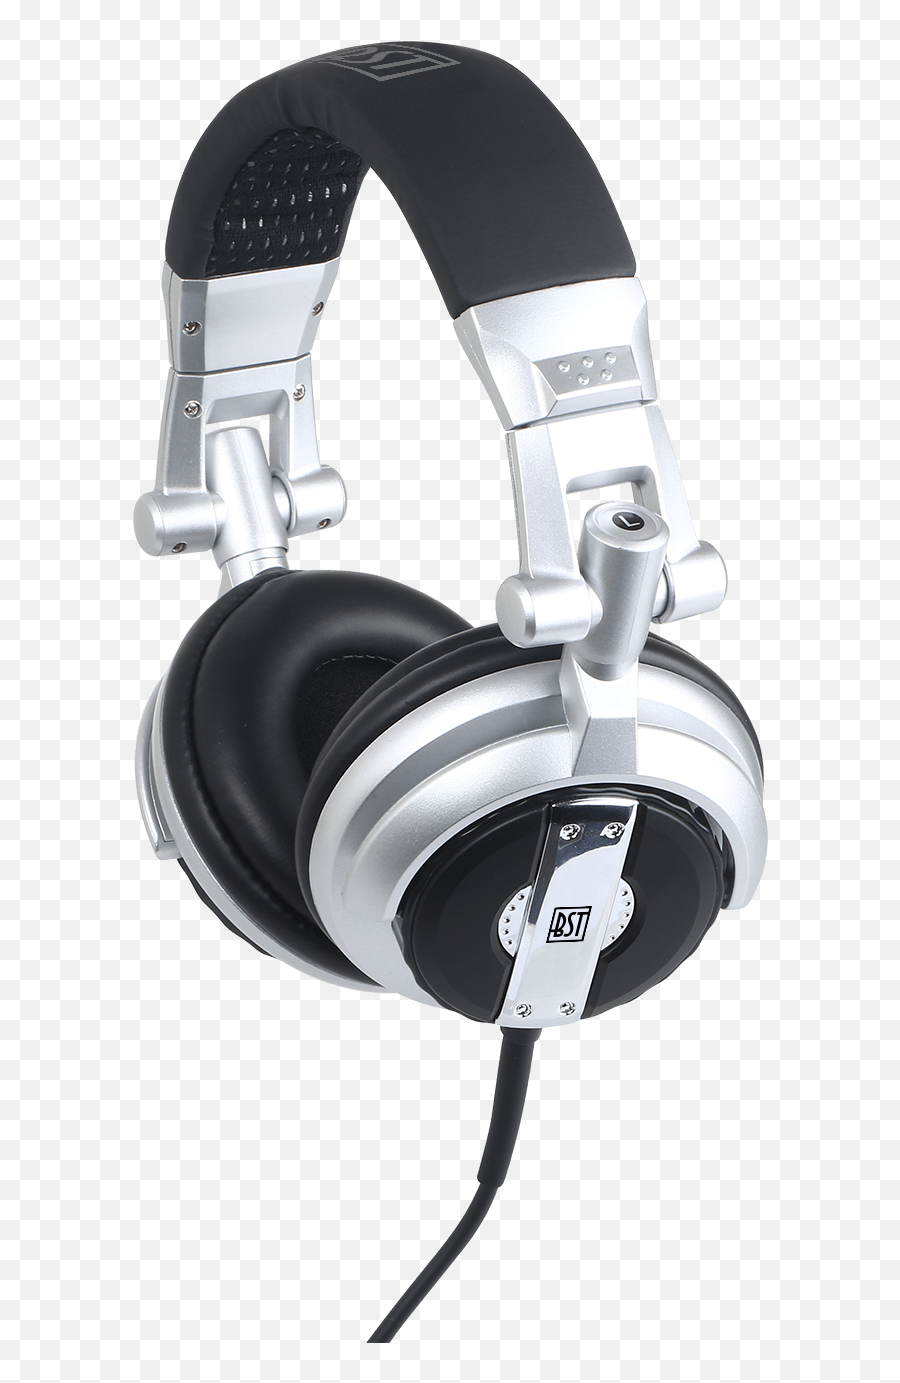 Bst Dj - Headphones Png,Dj Headphones Png